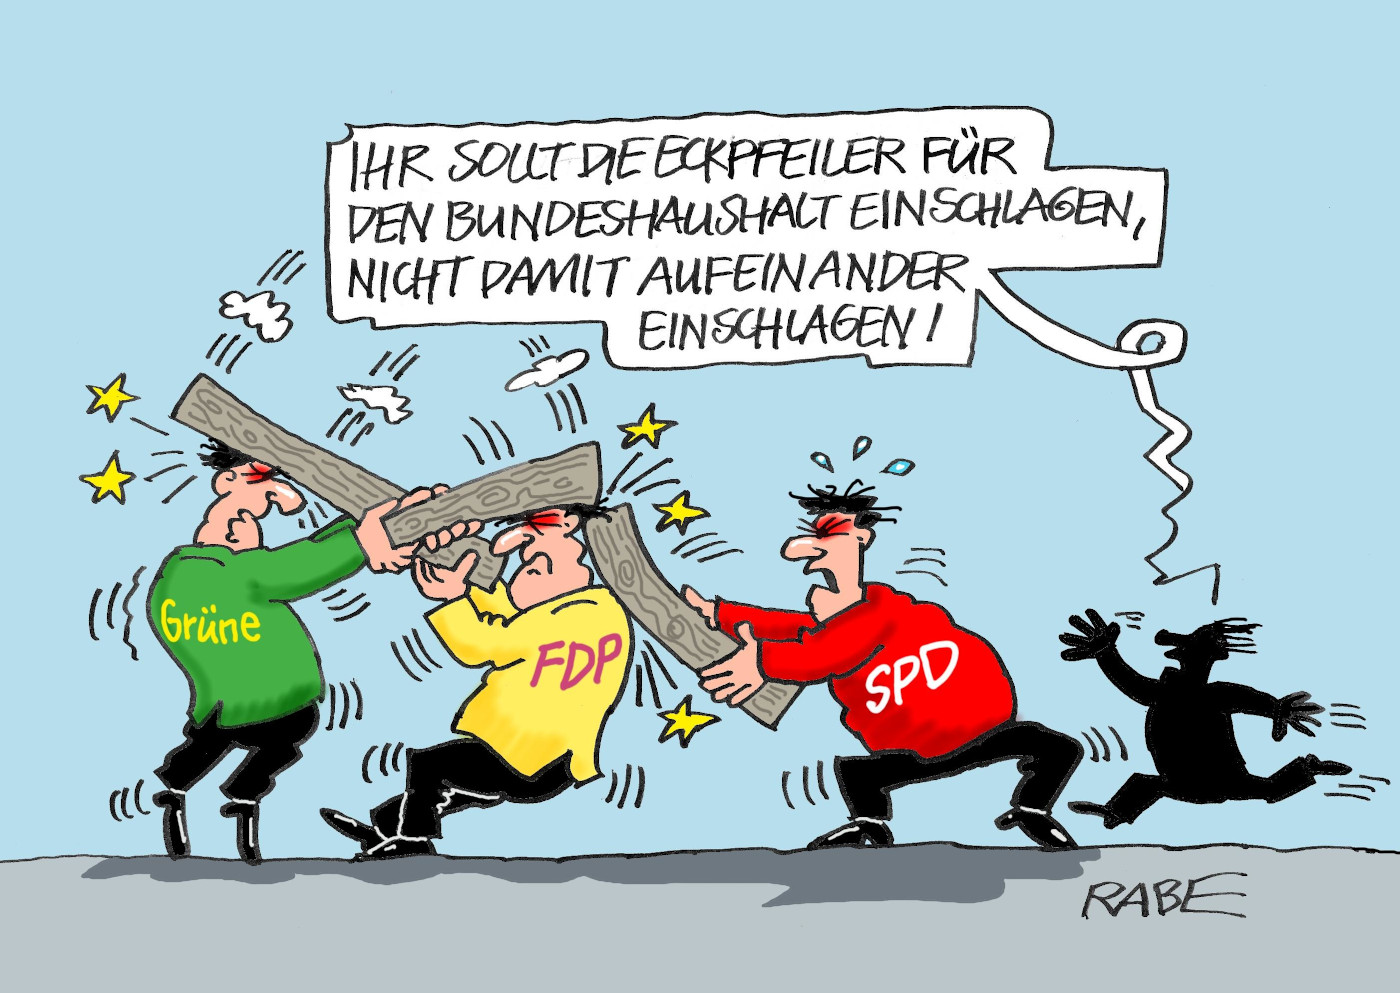 Die Karikatur "Haue Haue" von Karikaturist RABE. Zu sehen sind Vertreter von SPD, FDP und Grünen, die sich mit Holzpfeilern auf den Kopf schlagen. Darüber steht die Sprechblase einer vierten Person, die aus dem Hintergrund angelaufen kommt und sagt: "Ihr sollt die Eckpfeiler für den Bundeshaushalt einschlagen, nicht damit aufeinander einschlagen!"